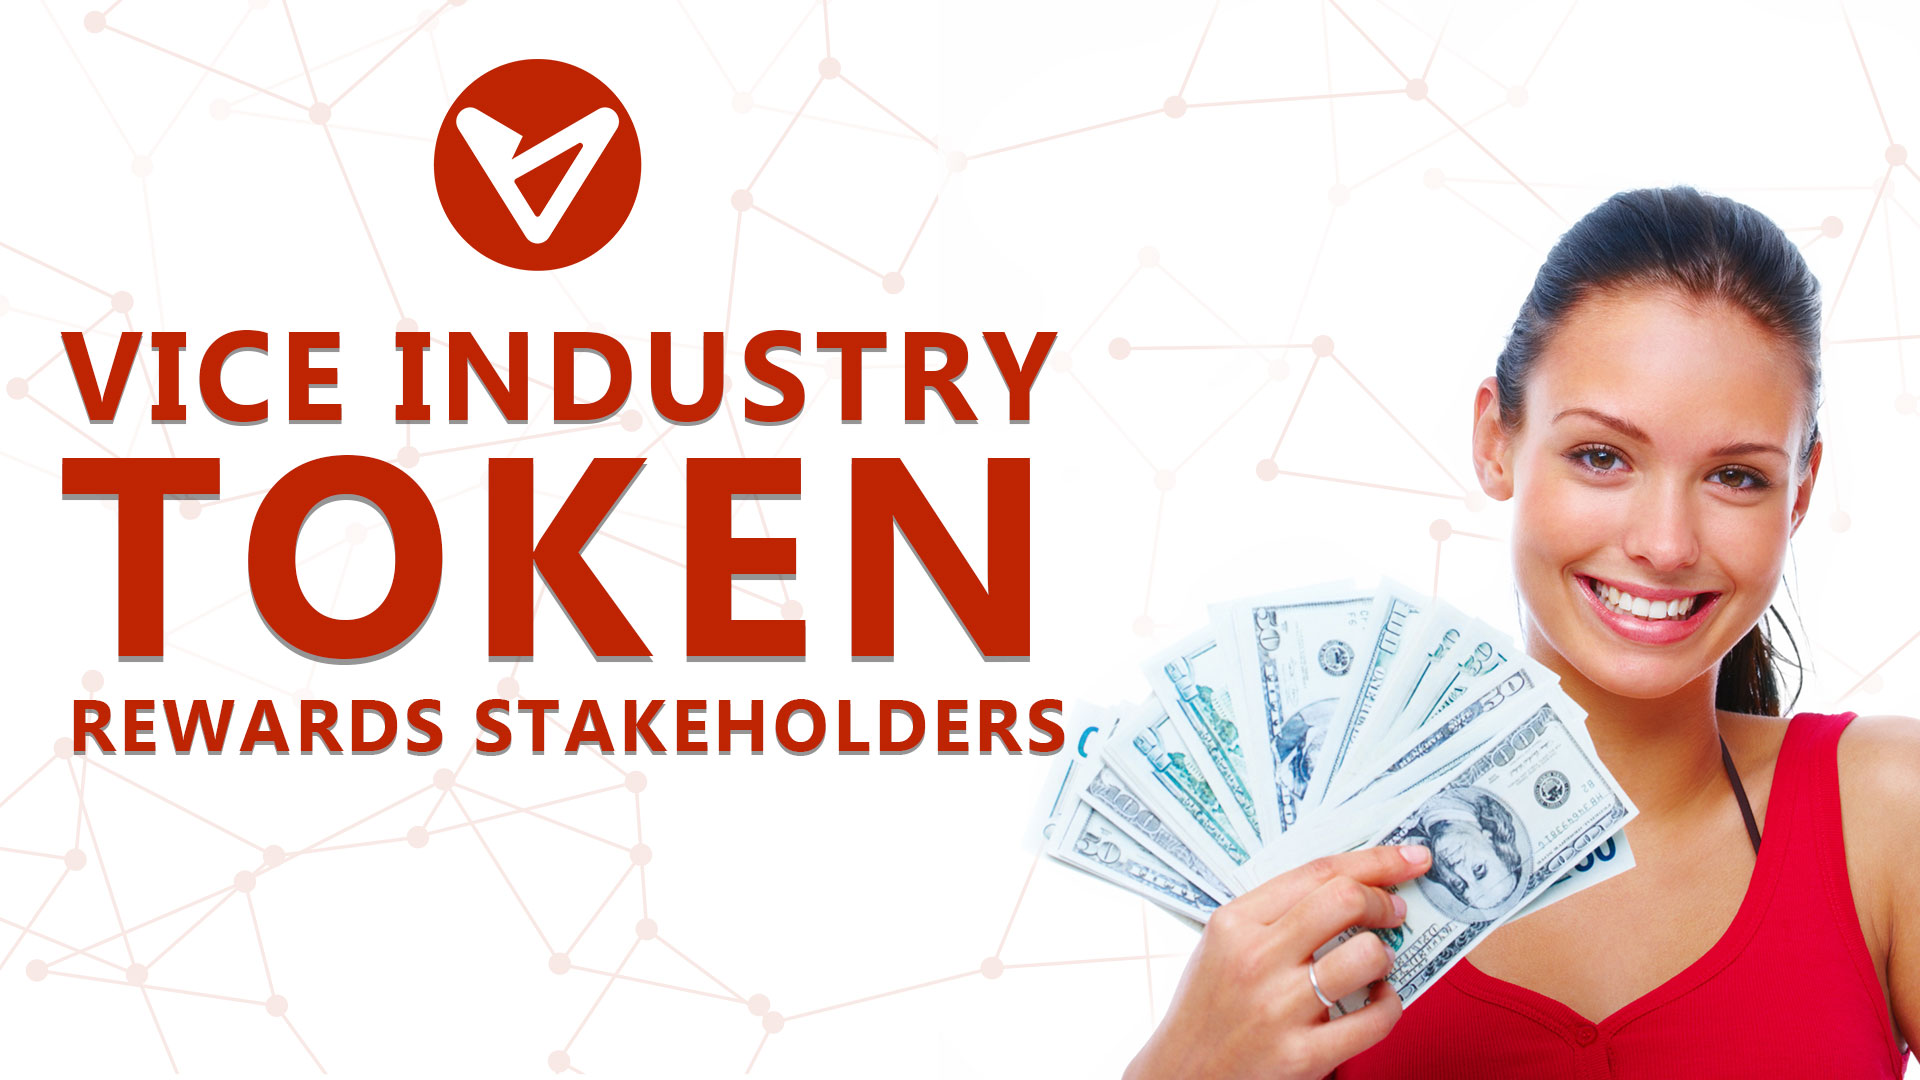 vice industry token to reward stakeholders in Industry